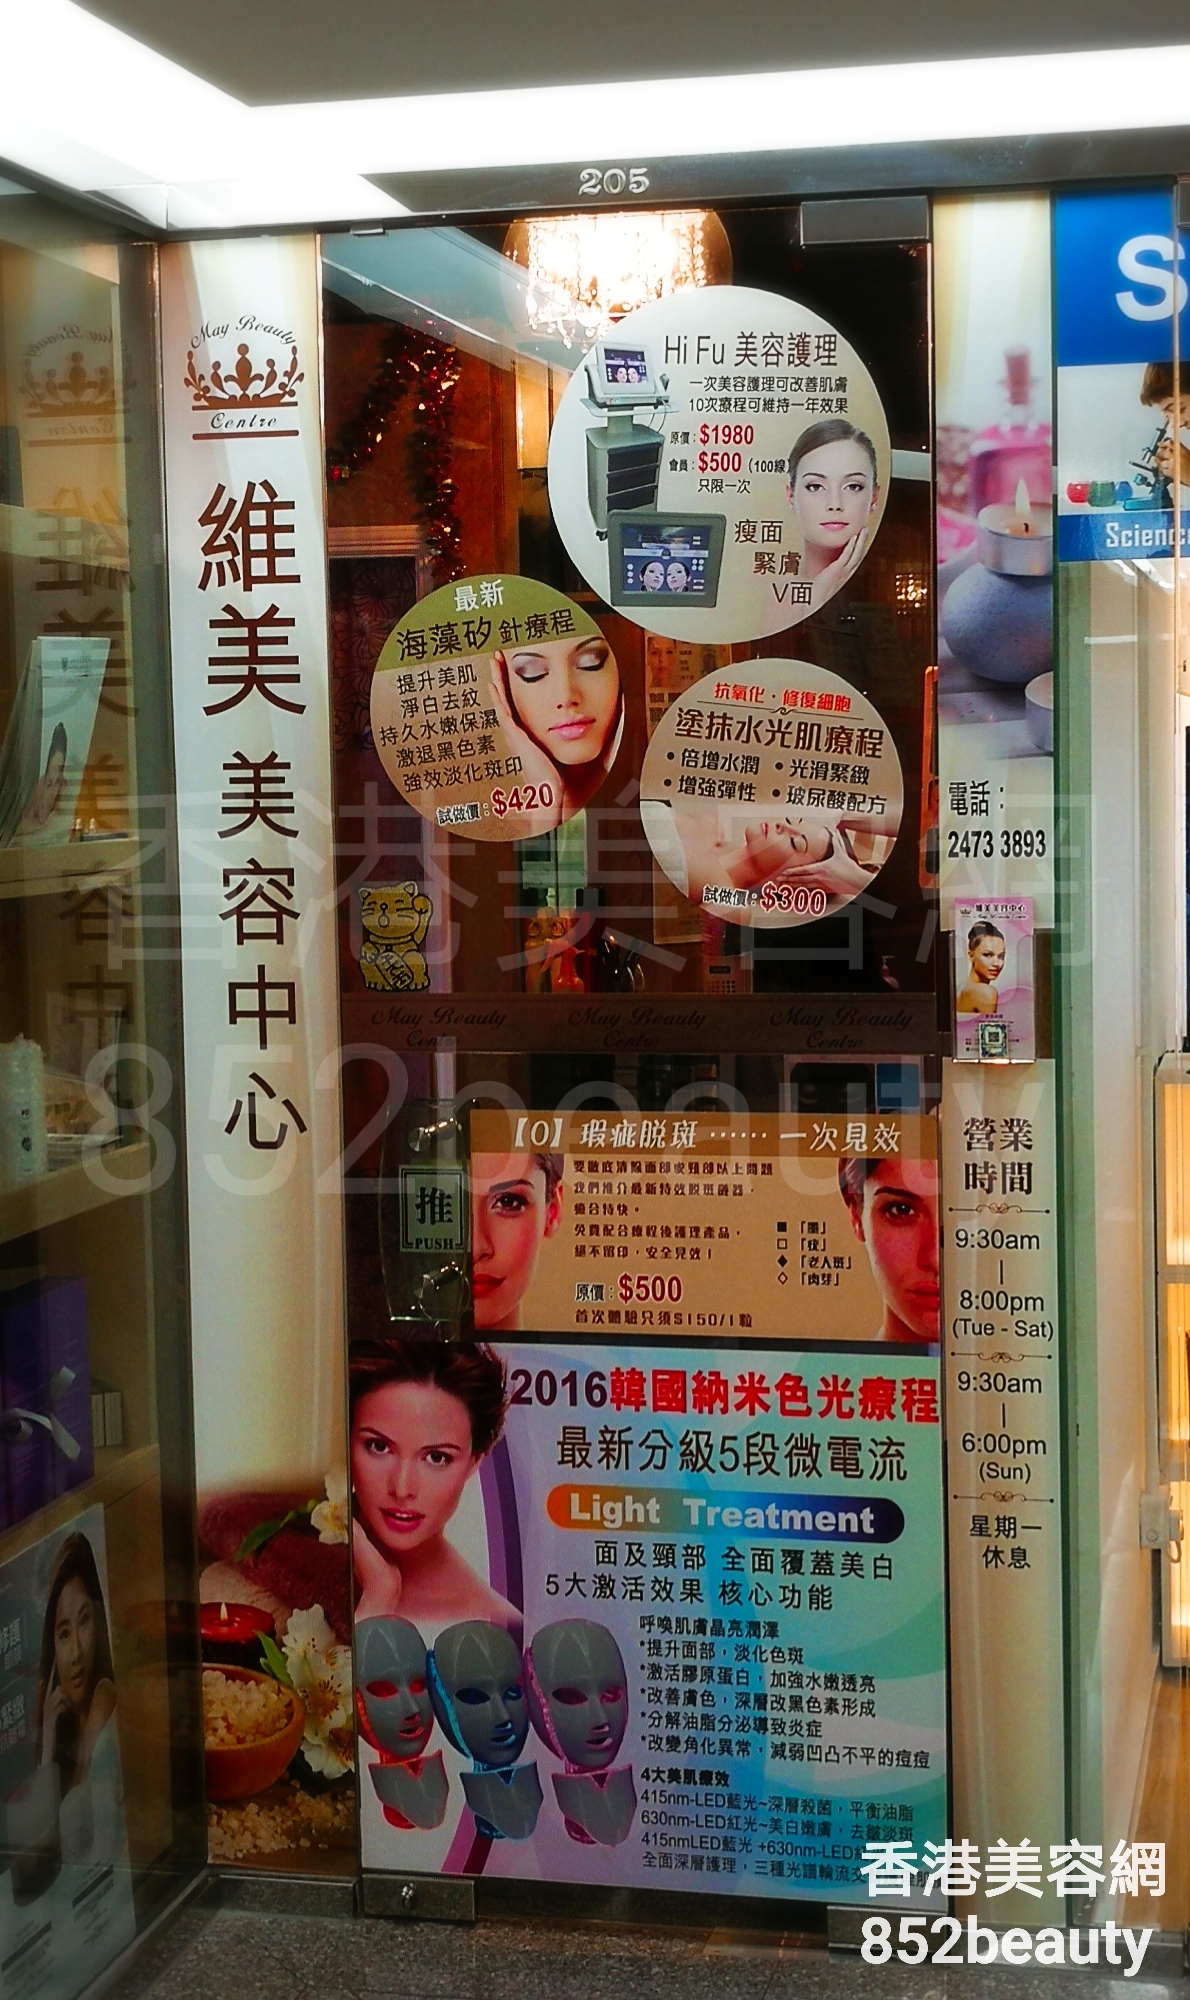 香港美容網 Hong Kong Beauty Salon 美容院 / 美容師: 維美美容中心